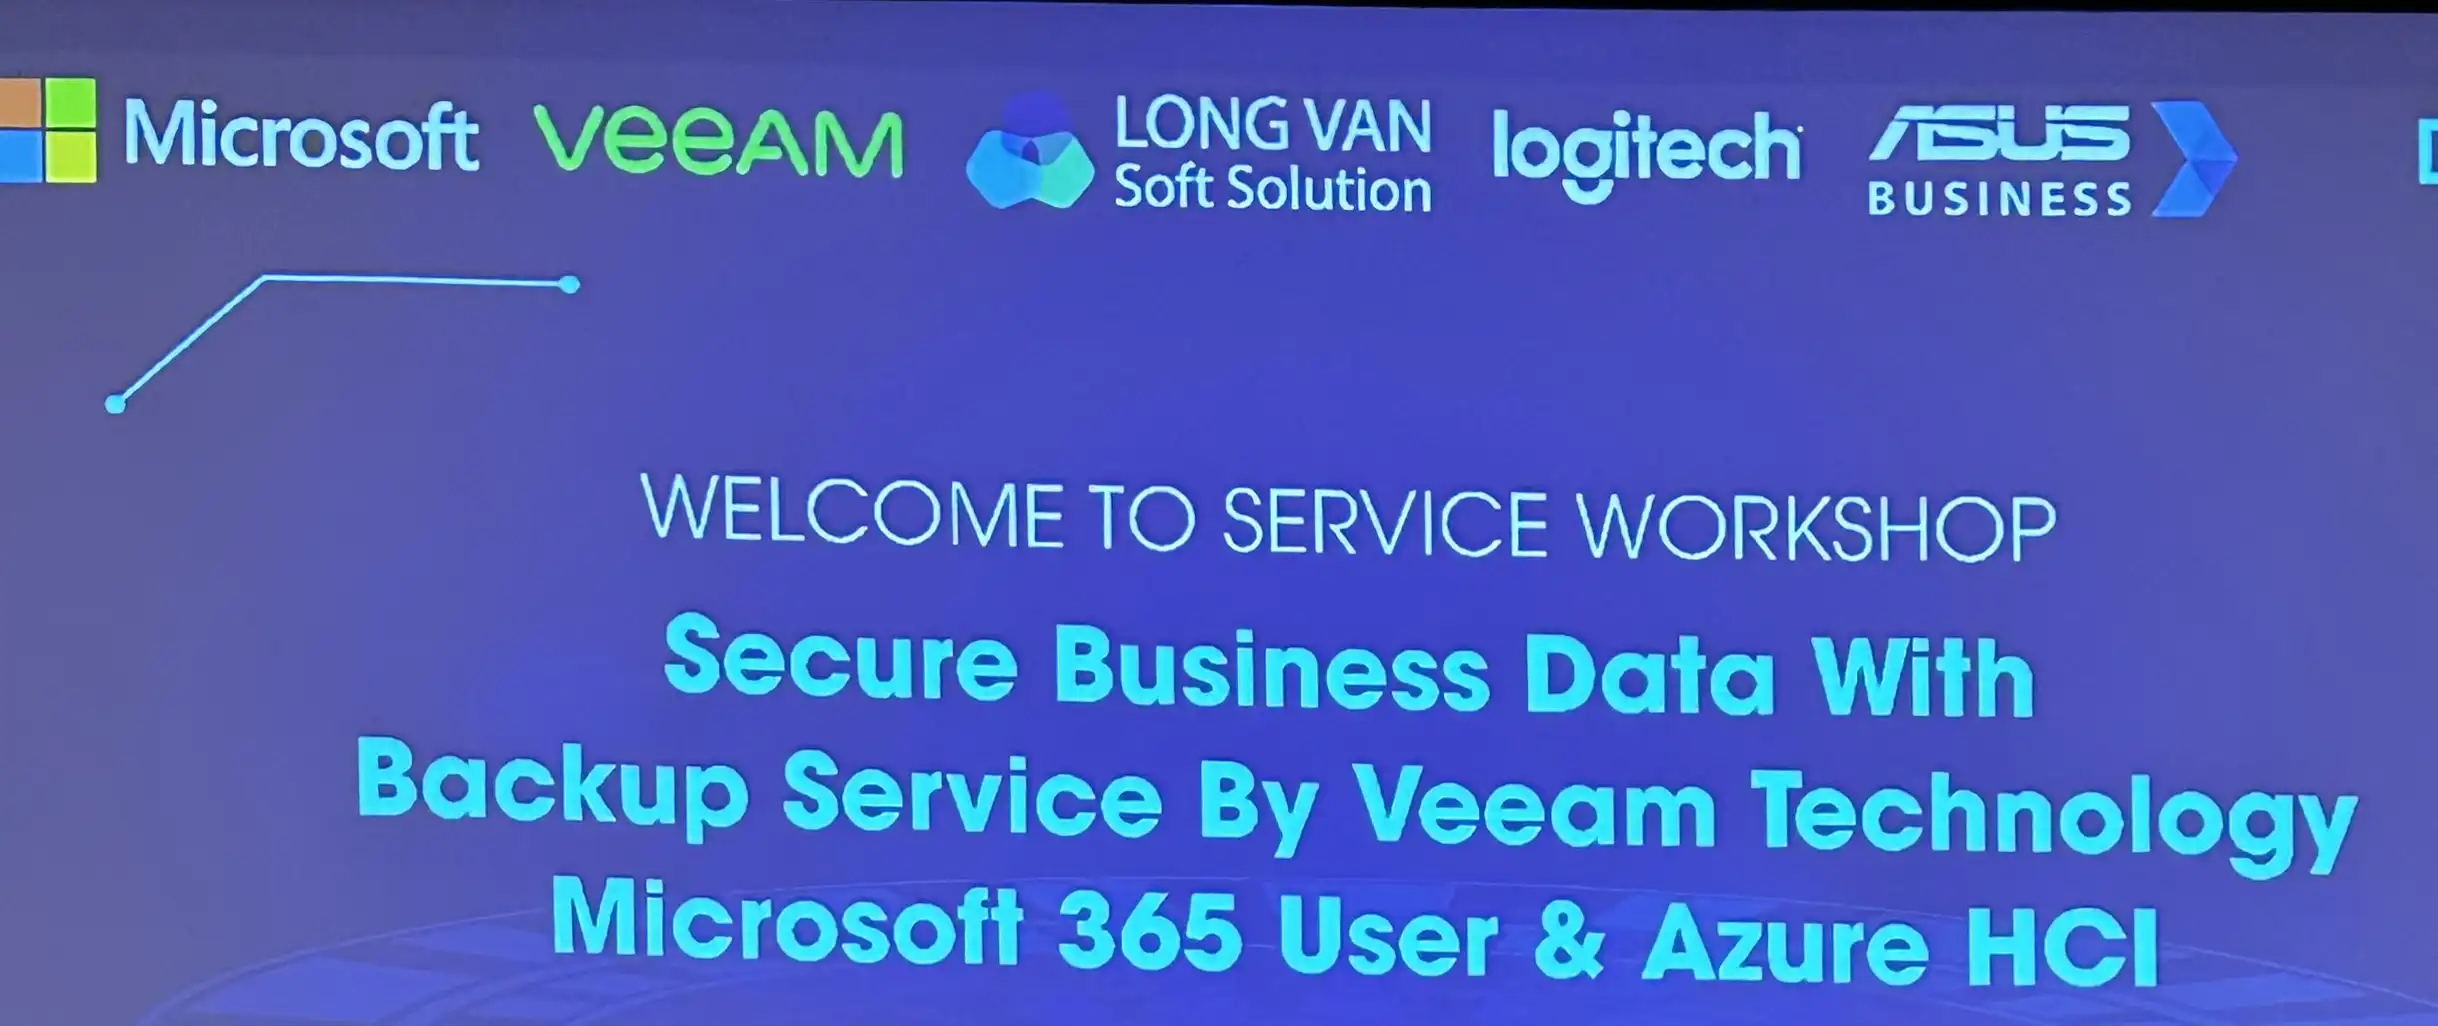 An toàn dữ liệu với dịch vụ lưu trữ dự phòng bằng công nghệ Veeam cho người dùng Microsoft 365 / Office 365 và Azure HCI